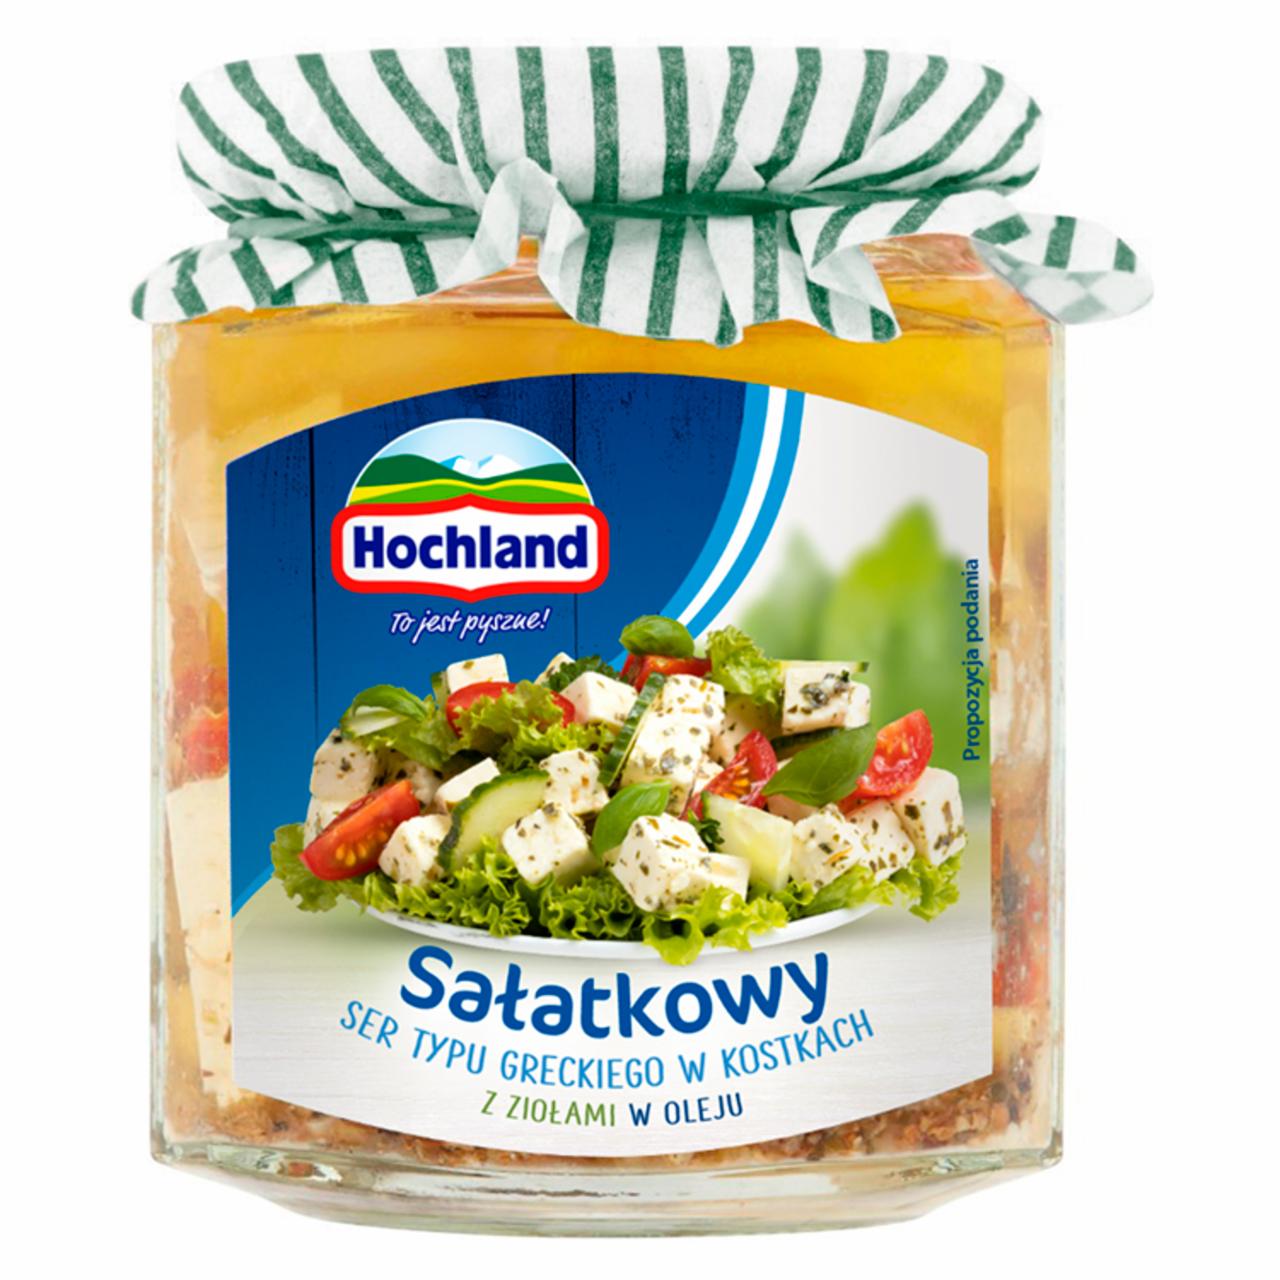 Zdjęcia - Hochland Sałatkowy ser typu greckiego w kostkach z ziołami w oleju 300 g